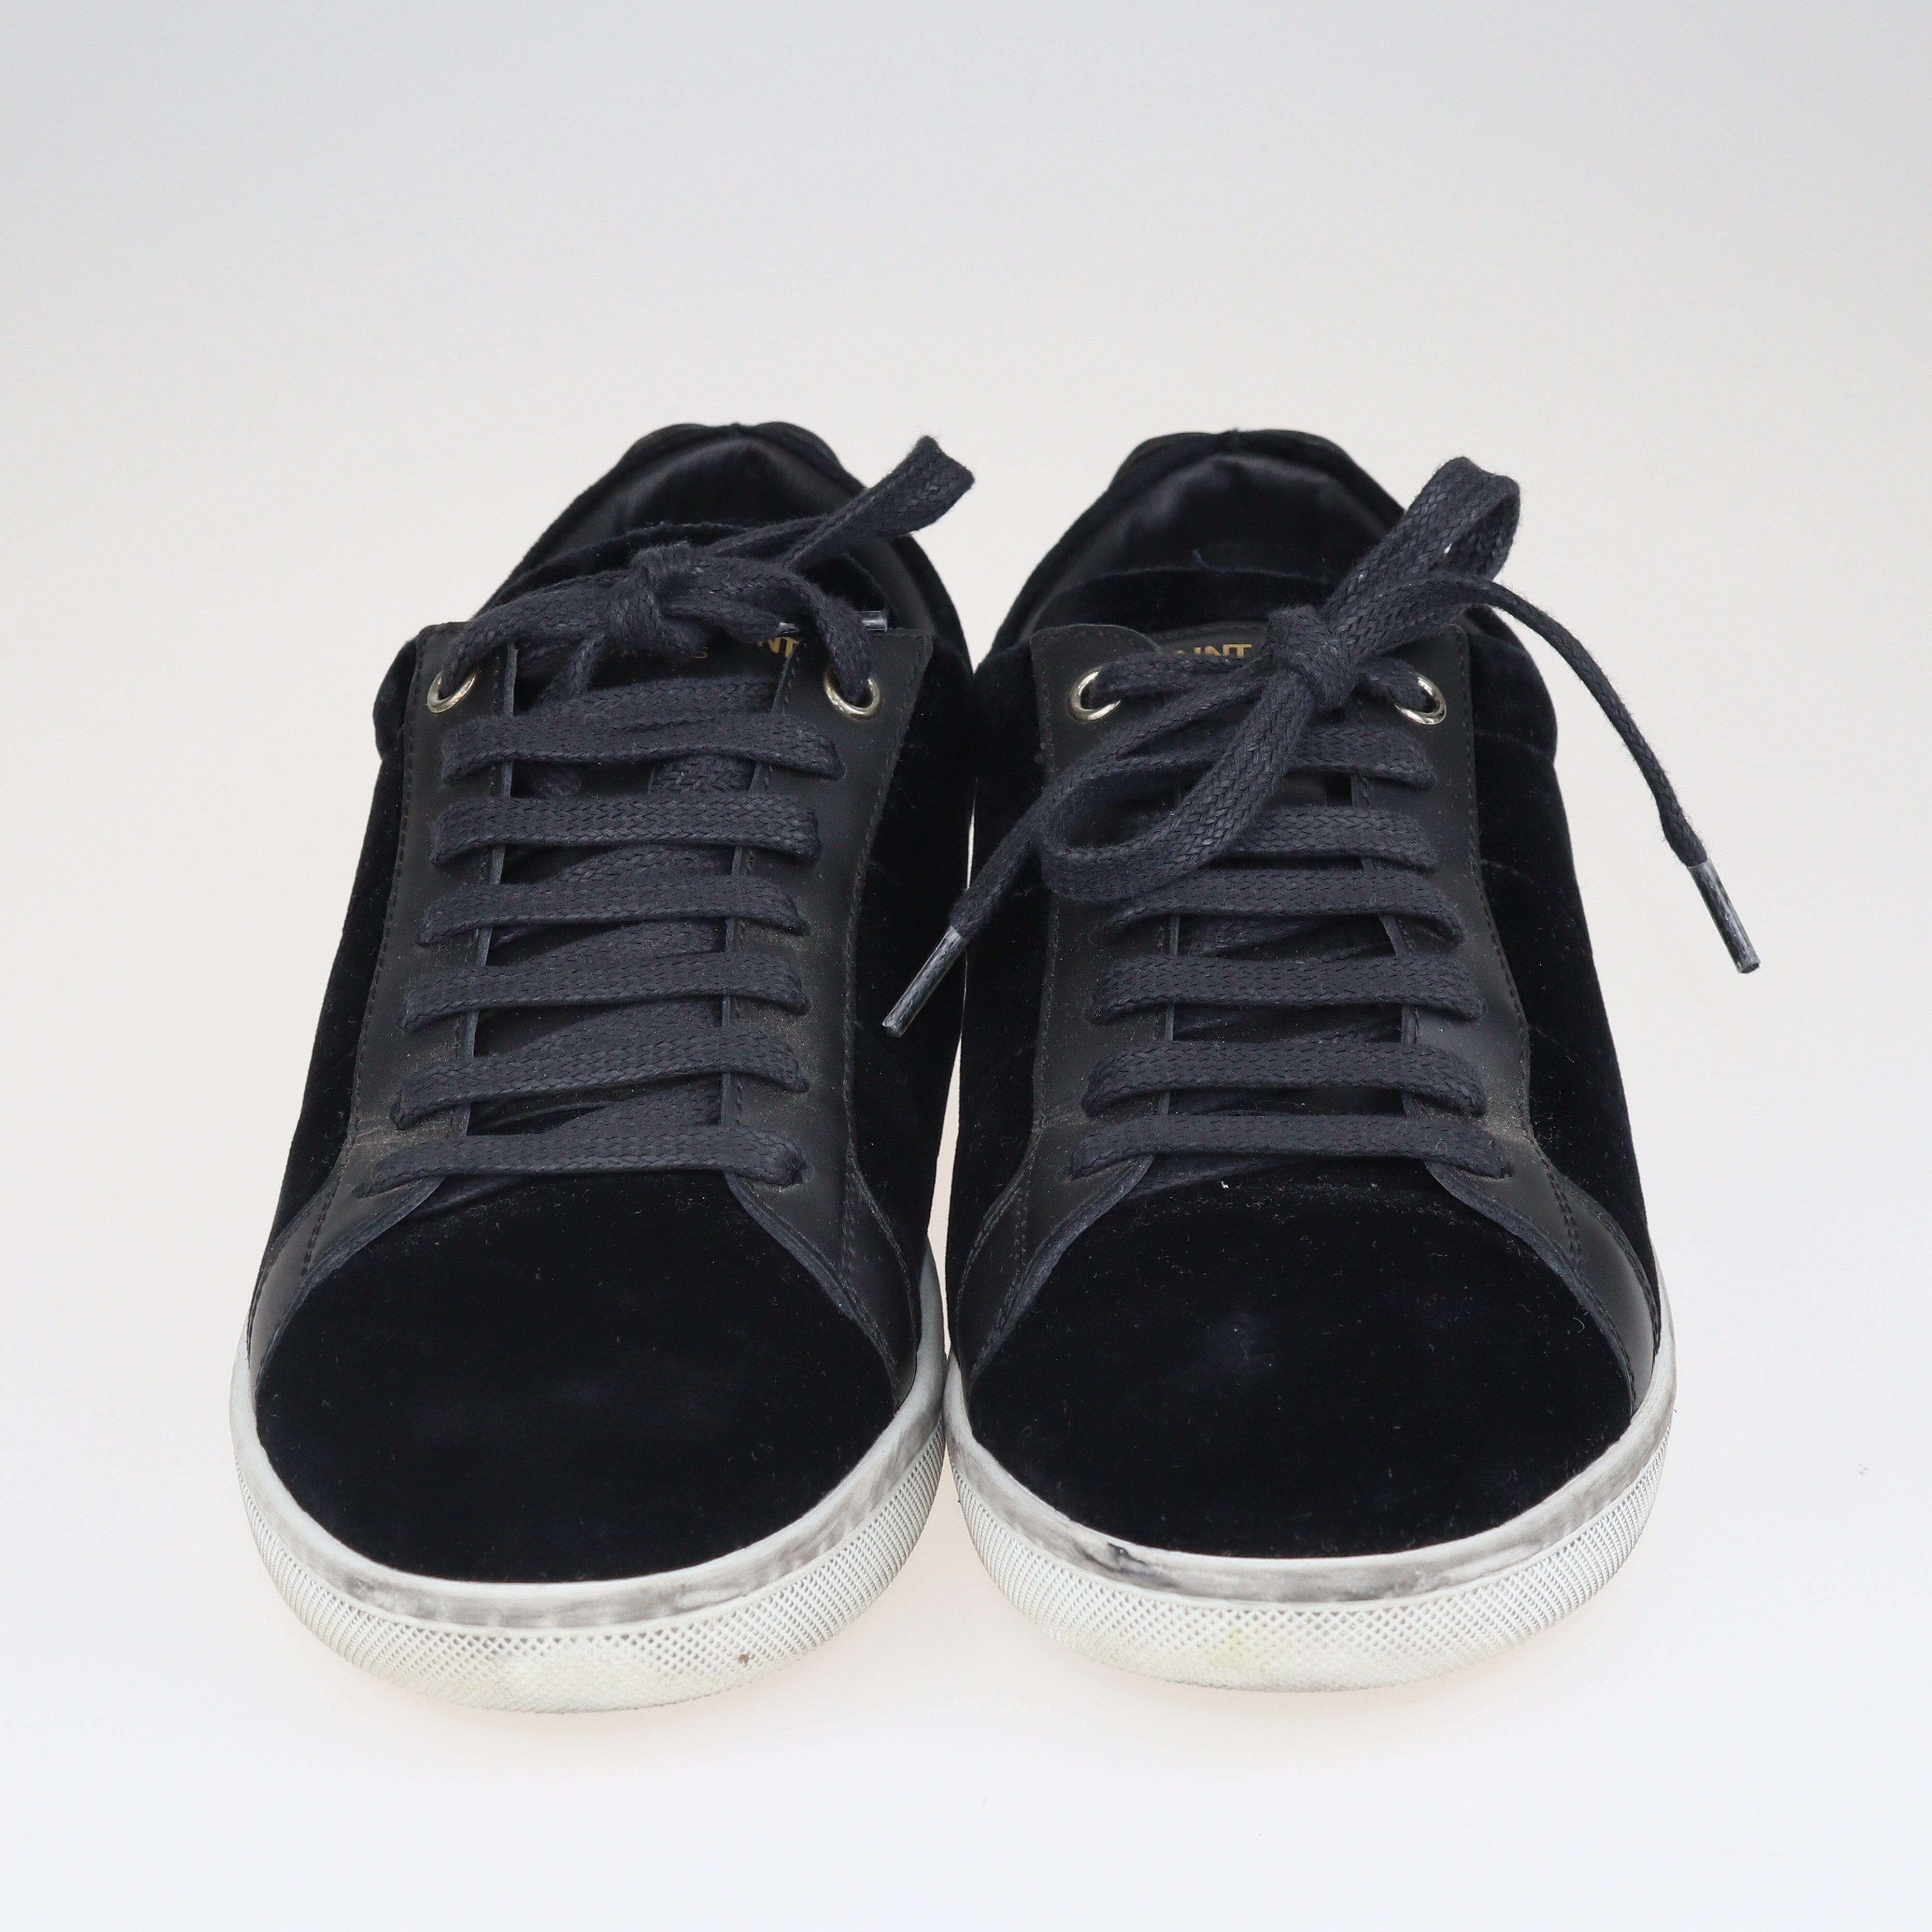 Black Signature Court Lips Low Top Sneakers Shoes Saint Laurent 